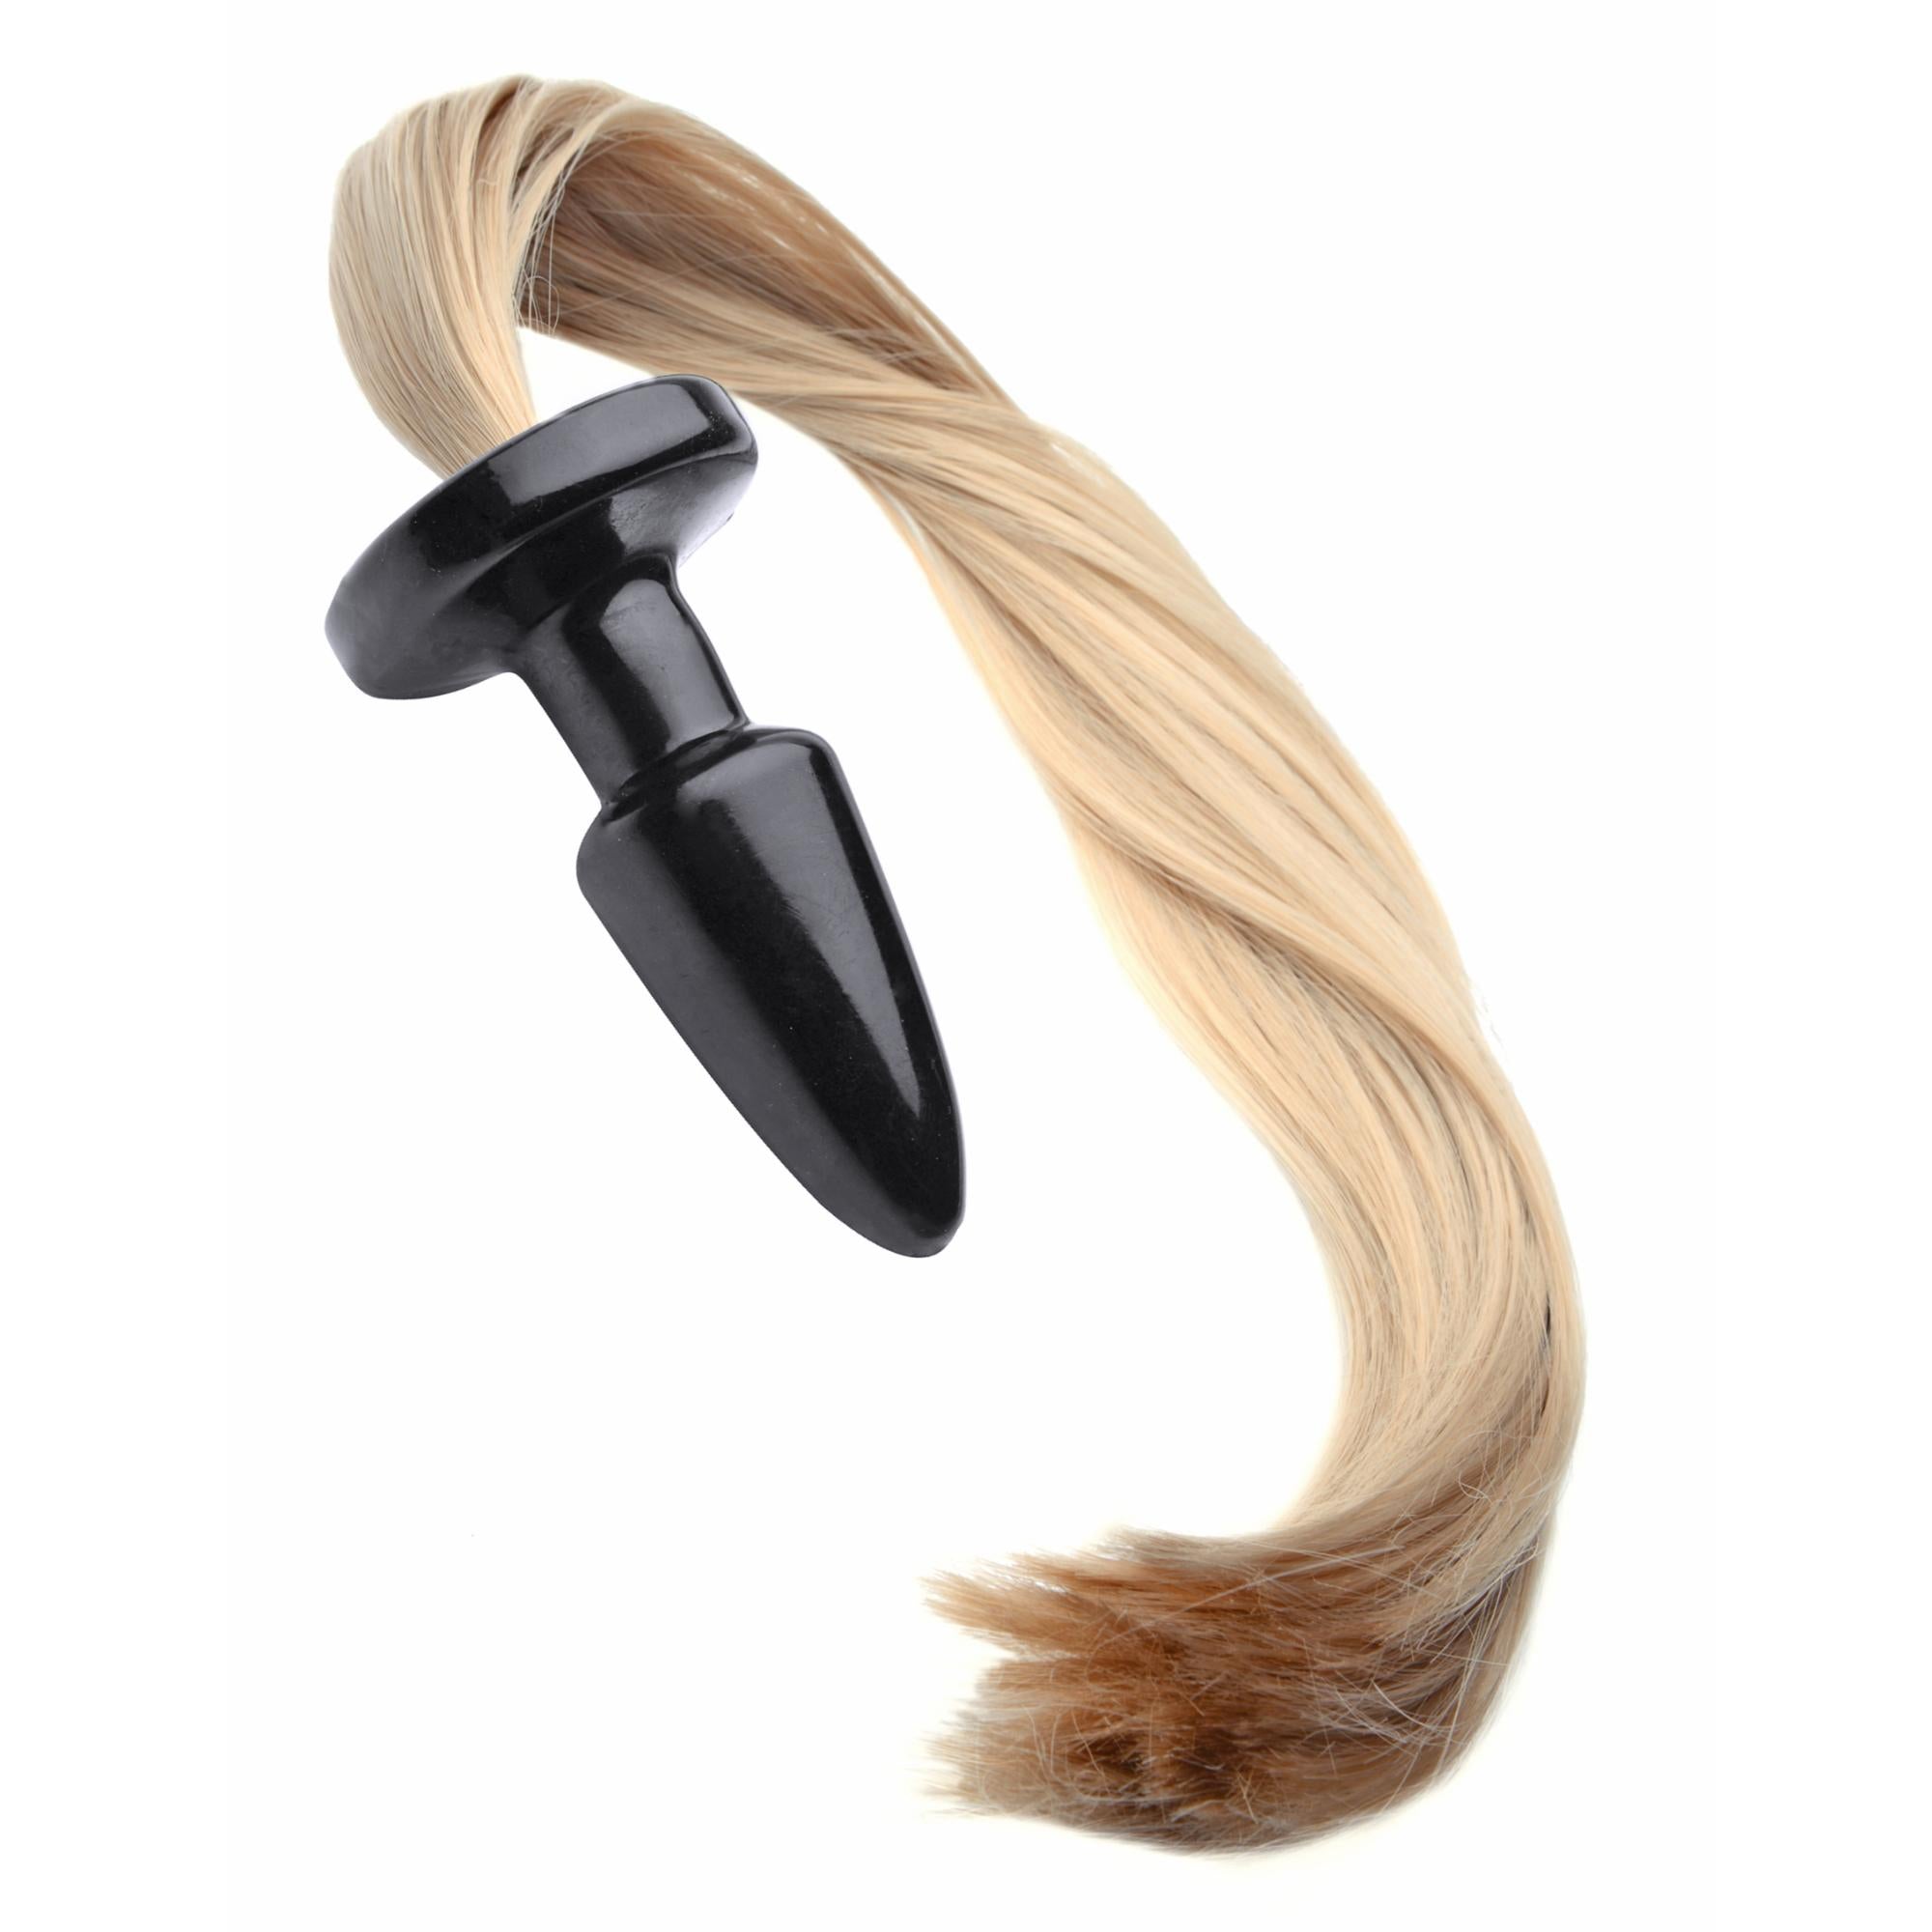 Tailz Blondie's Pony Tail Butt Plug